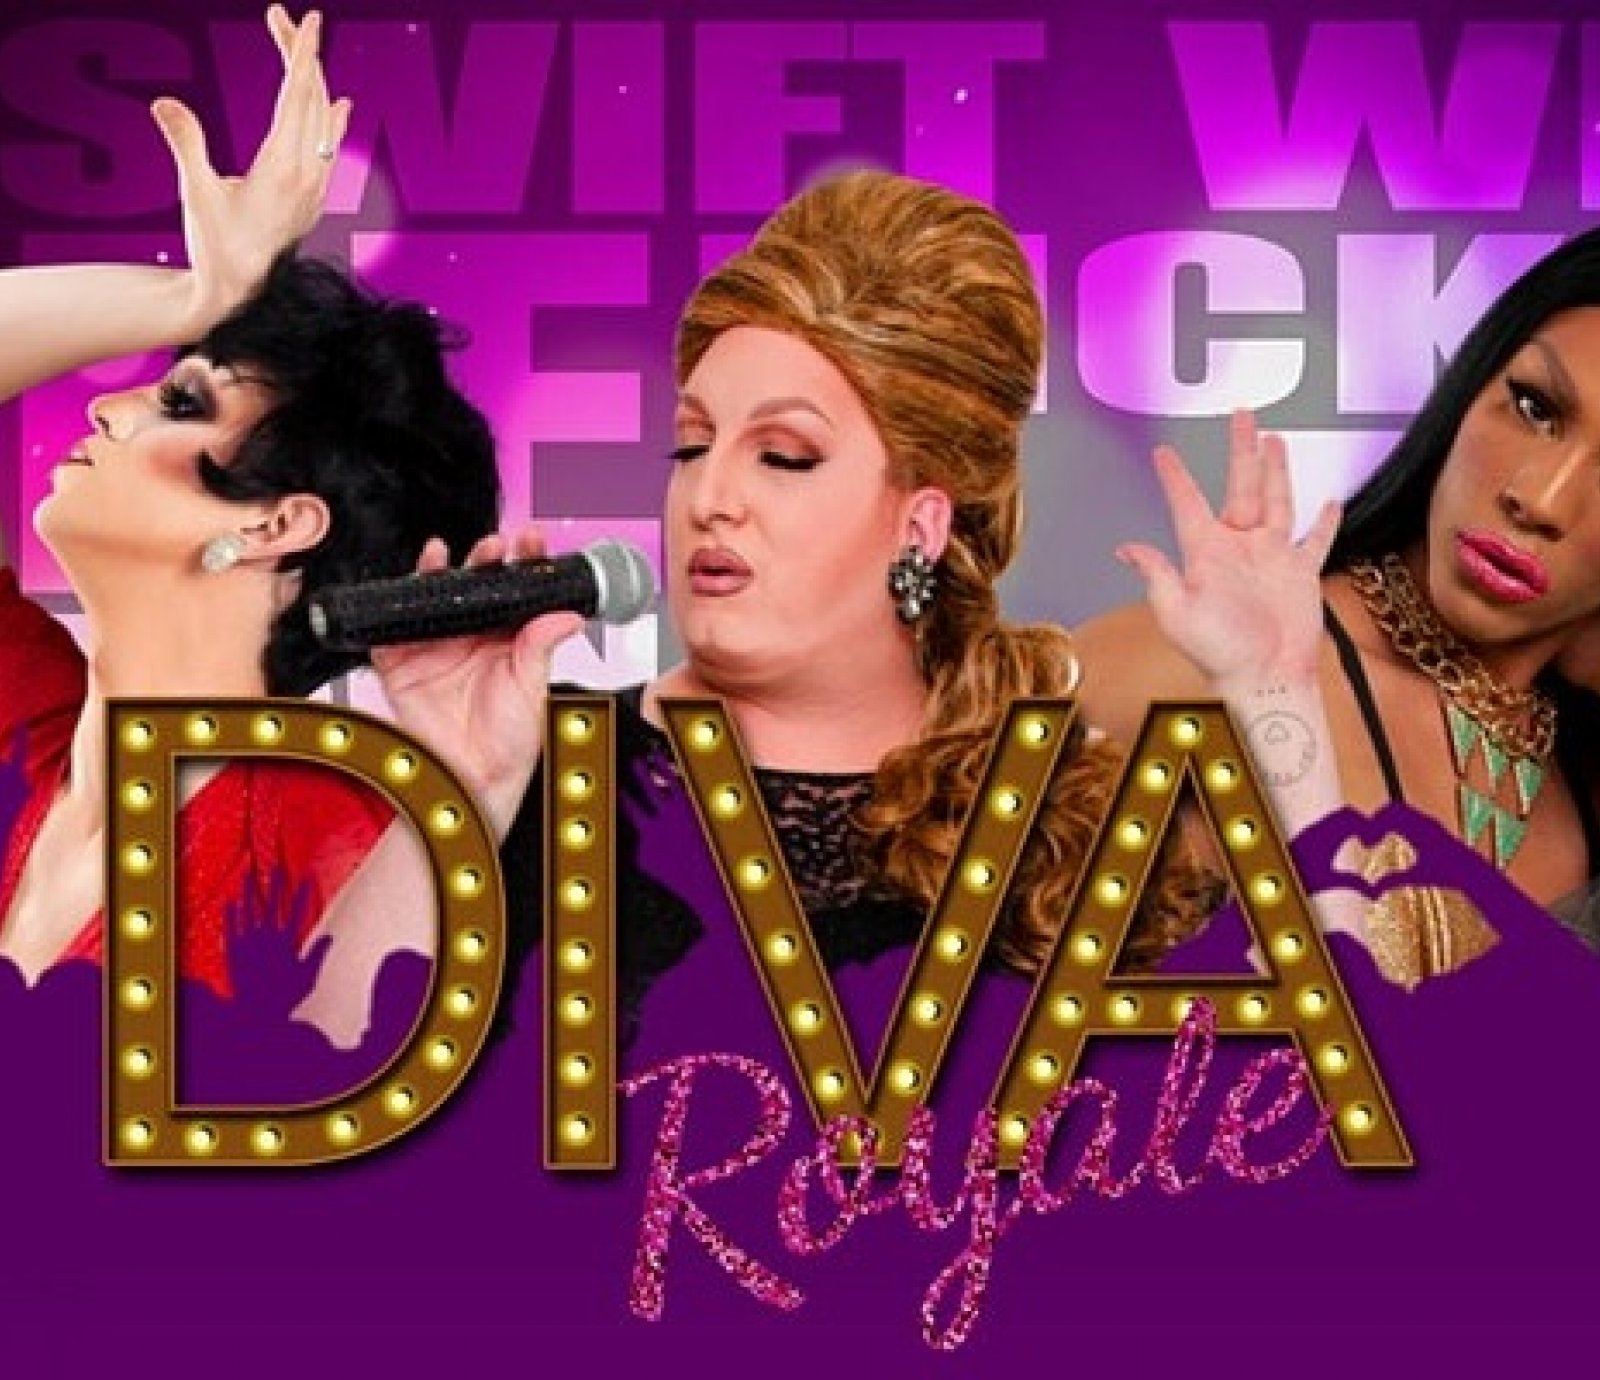 Diva Royale Drag Queen Show - Las Vegas